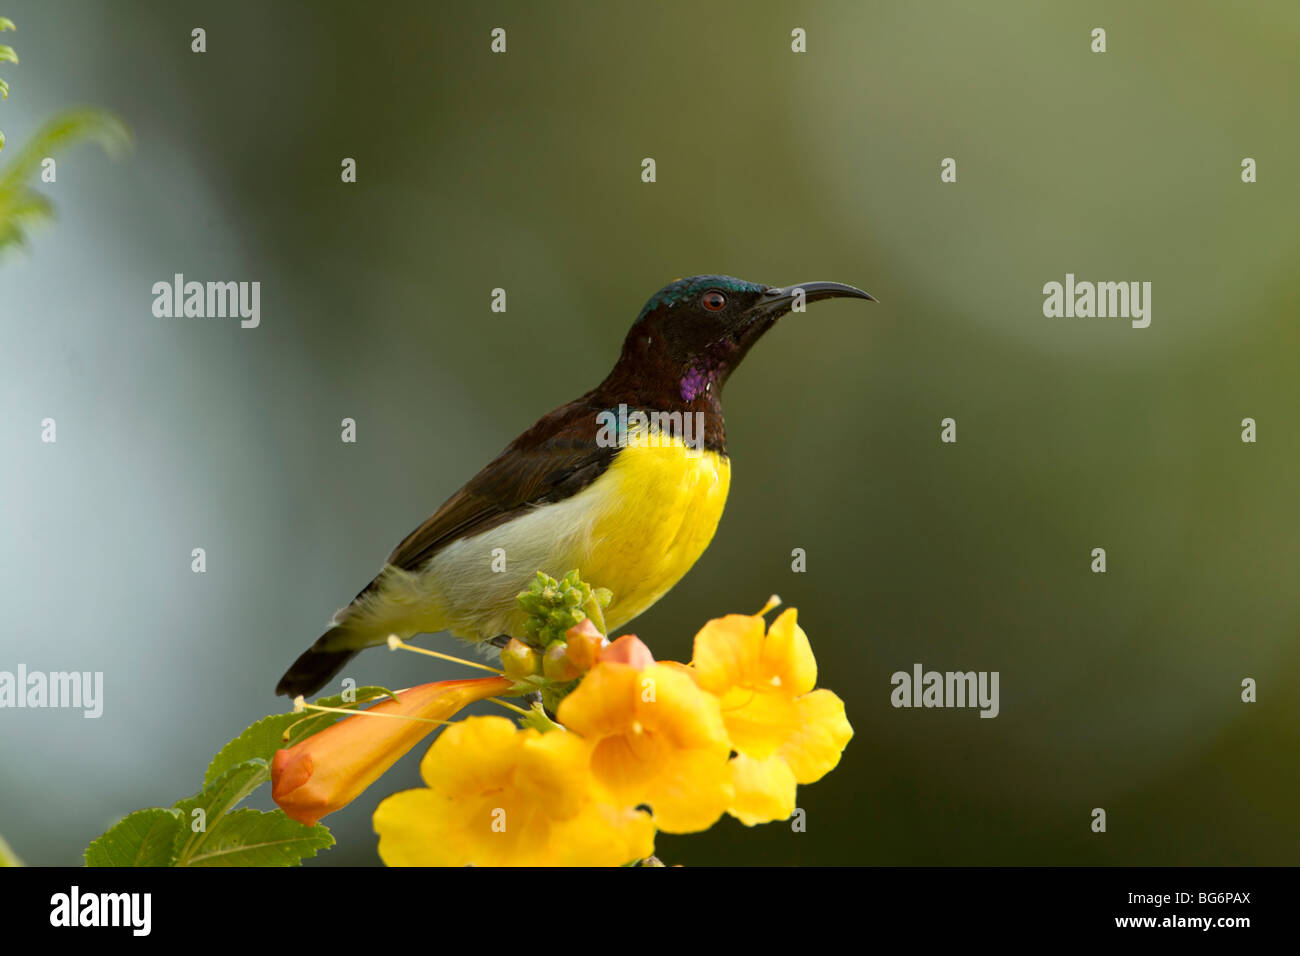 cute Purple sunbird bird on flower Stock Photo